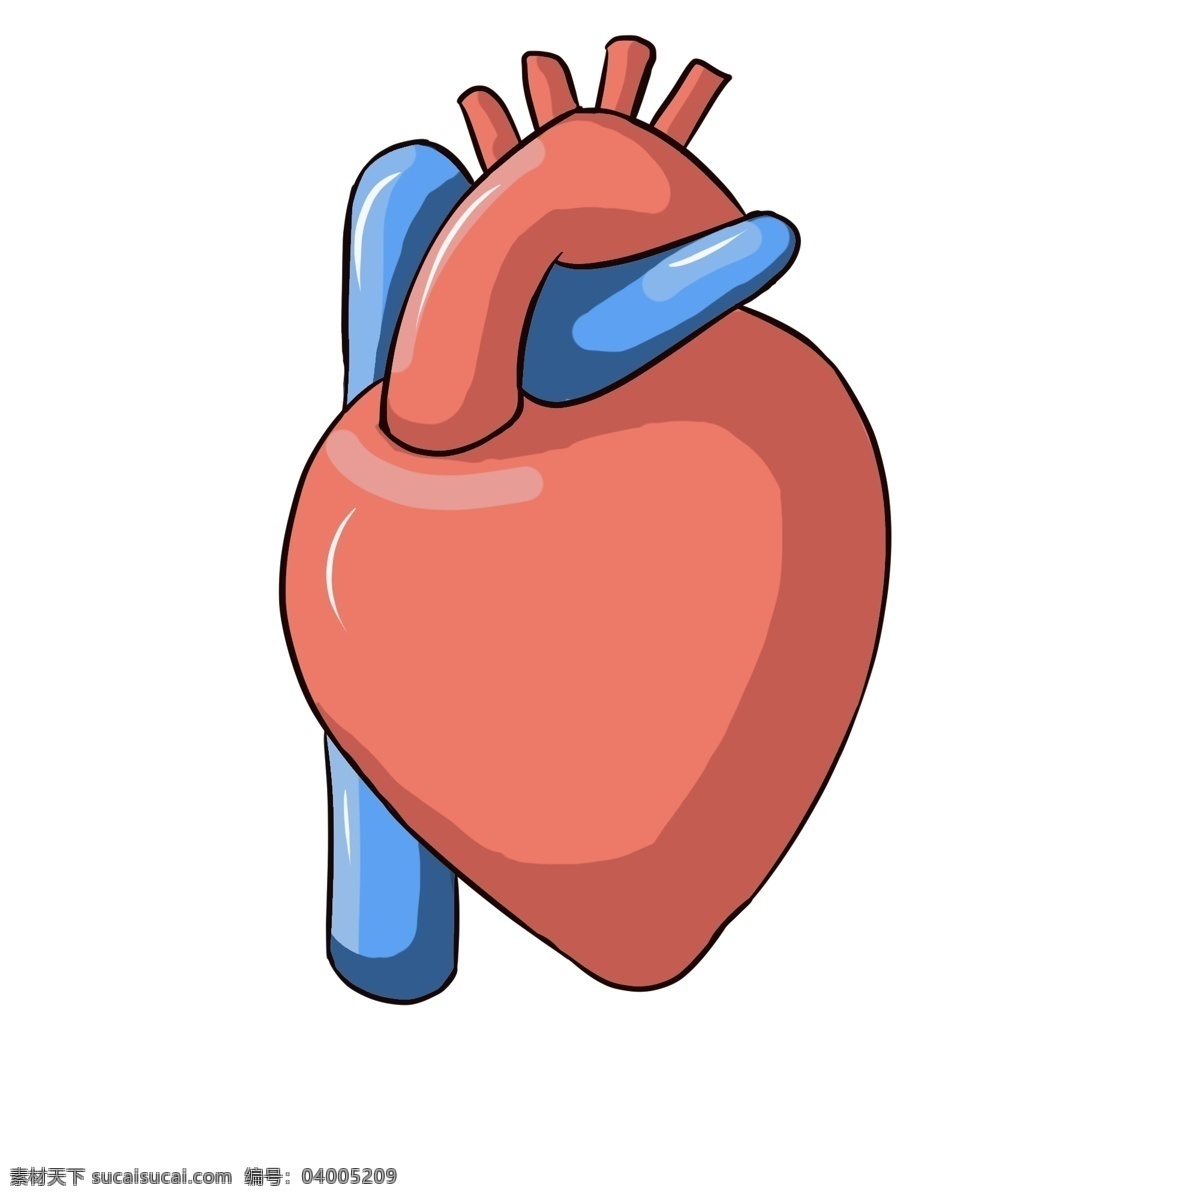 红色 心脏 装饰 插画 红色的心脏 漂亮的心脏 心脏装饰 心脏插画 立体心脏 卡通心脏 健康的心脏